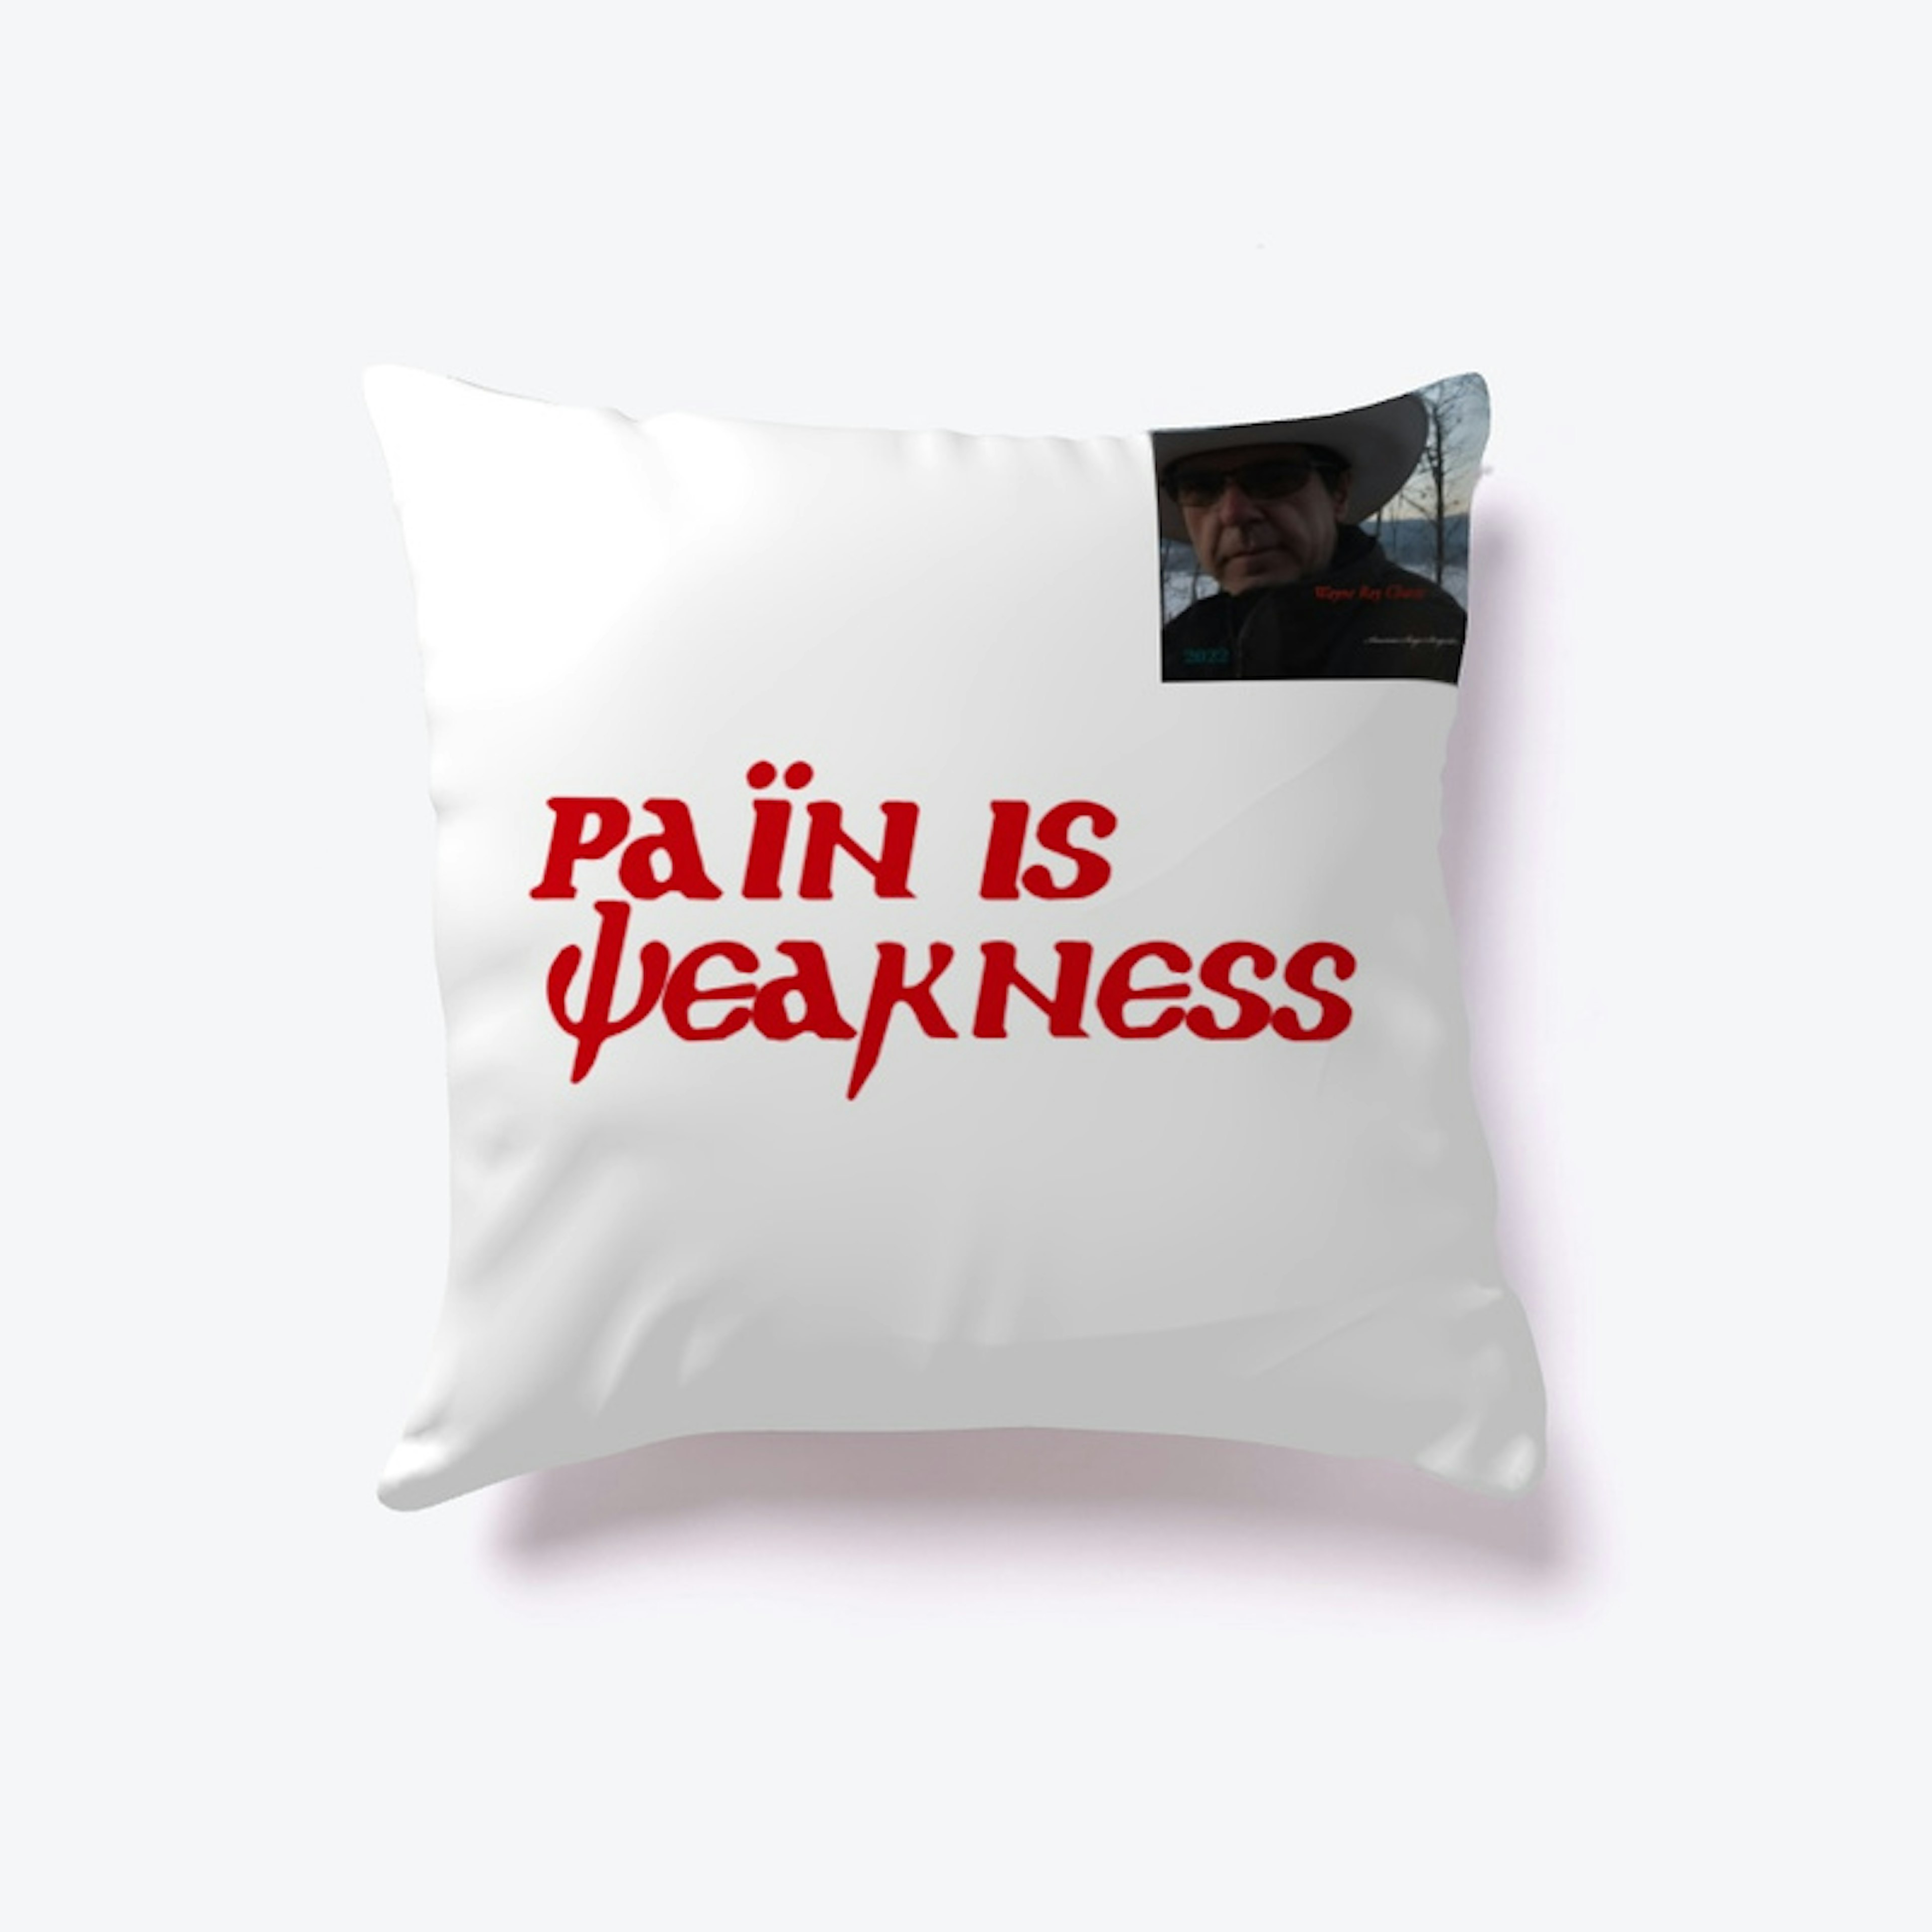 Pain is Weakness